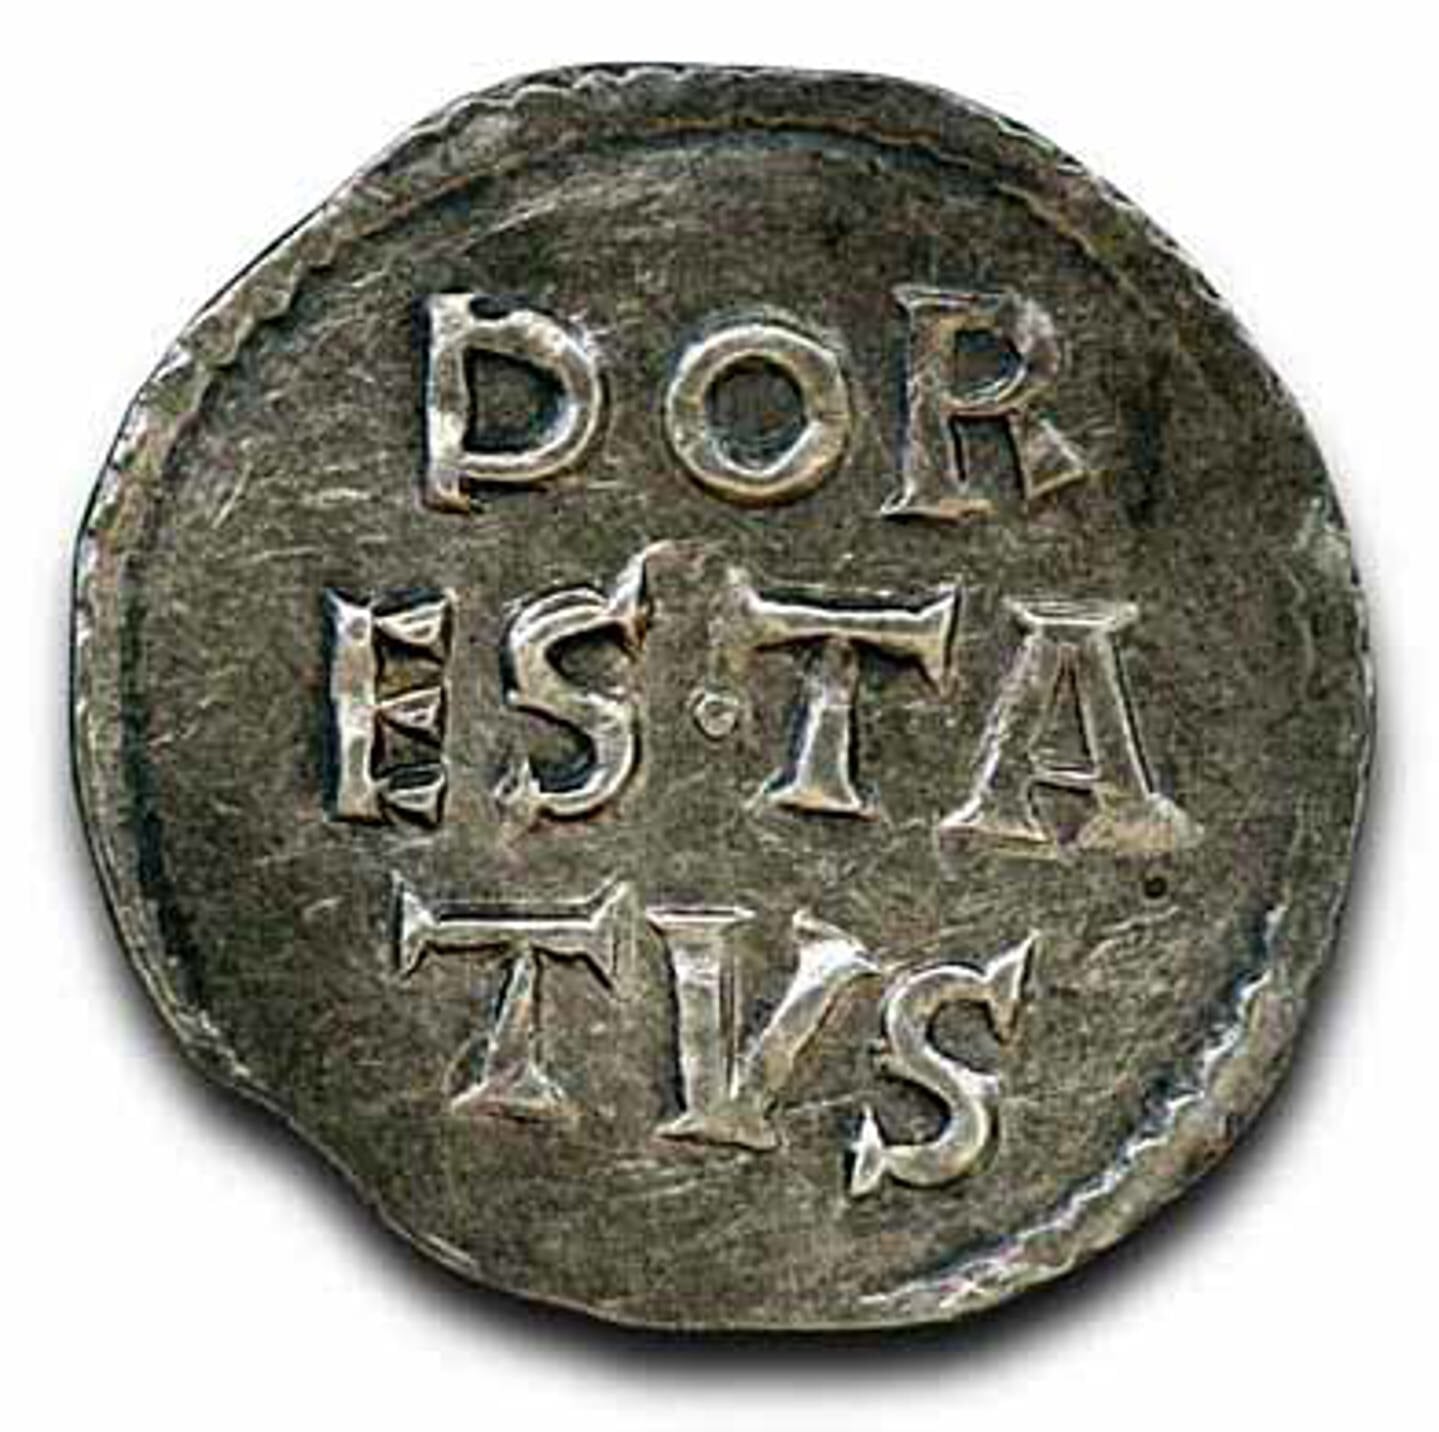 Dorestad had een eigen munt.